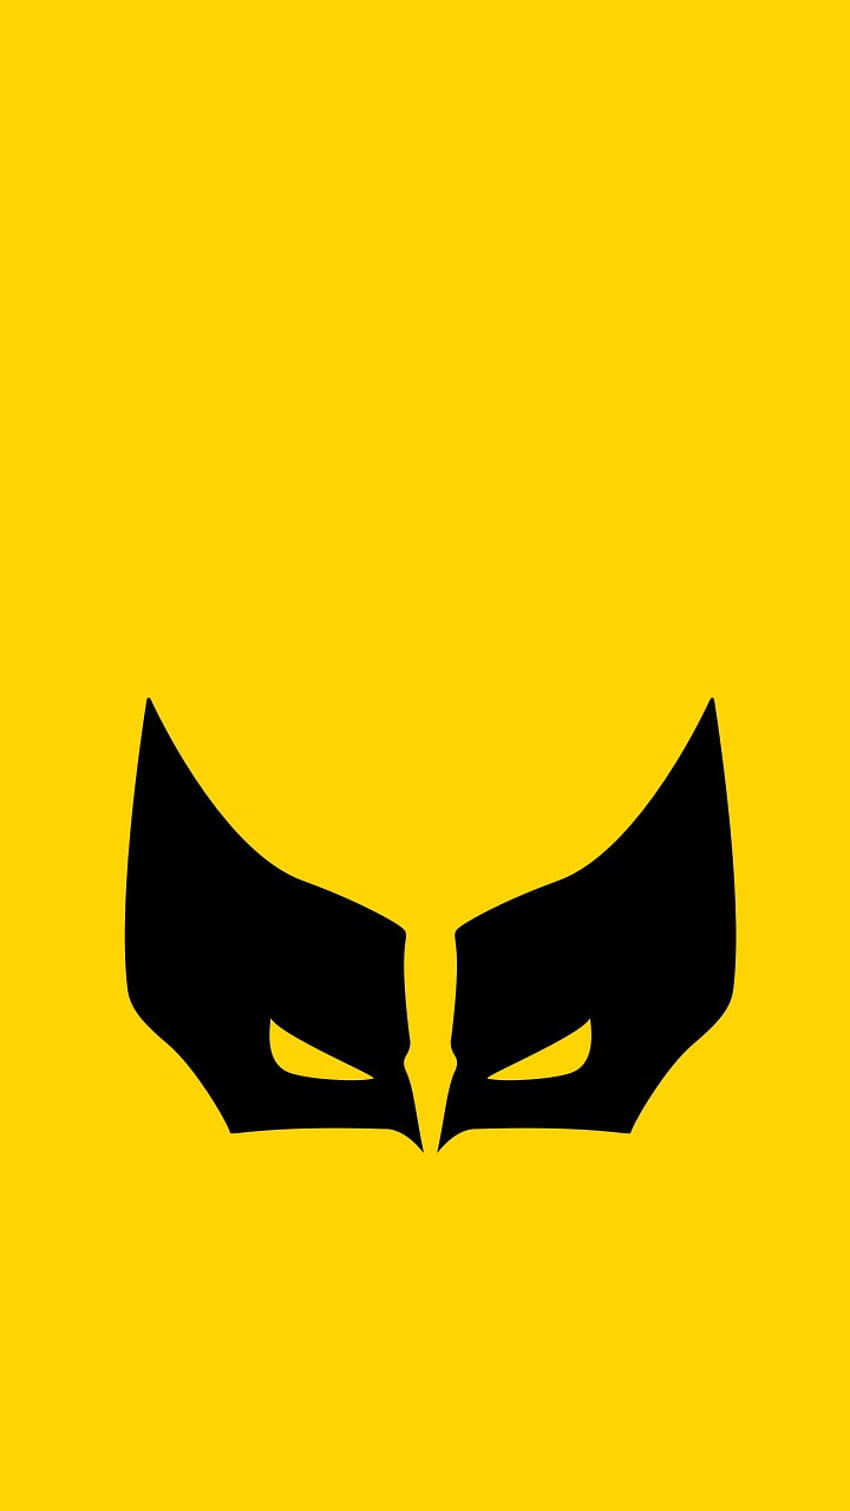 Homemcom Telefone Usando Máscara Do Wolverine. Papel de Parede